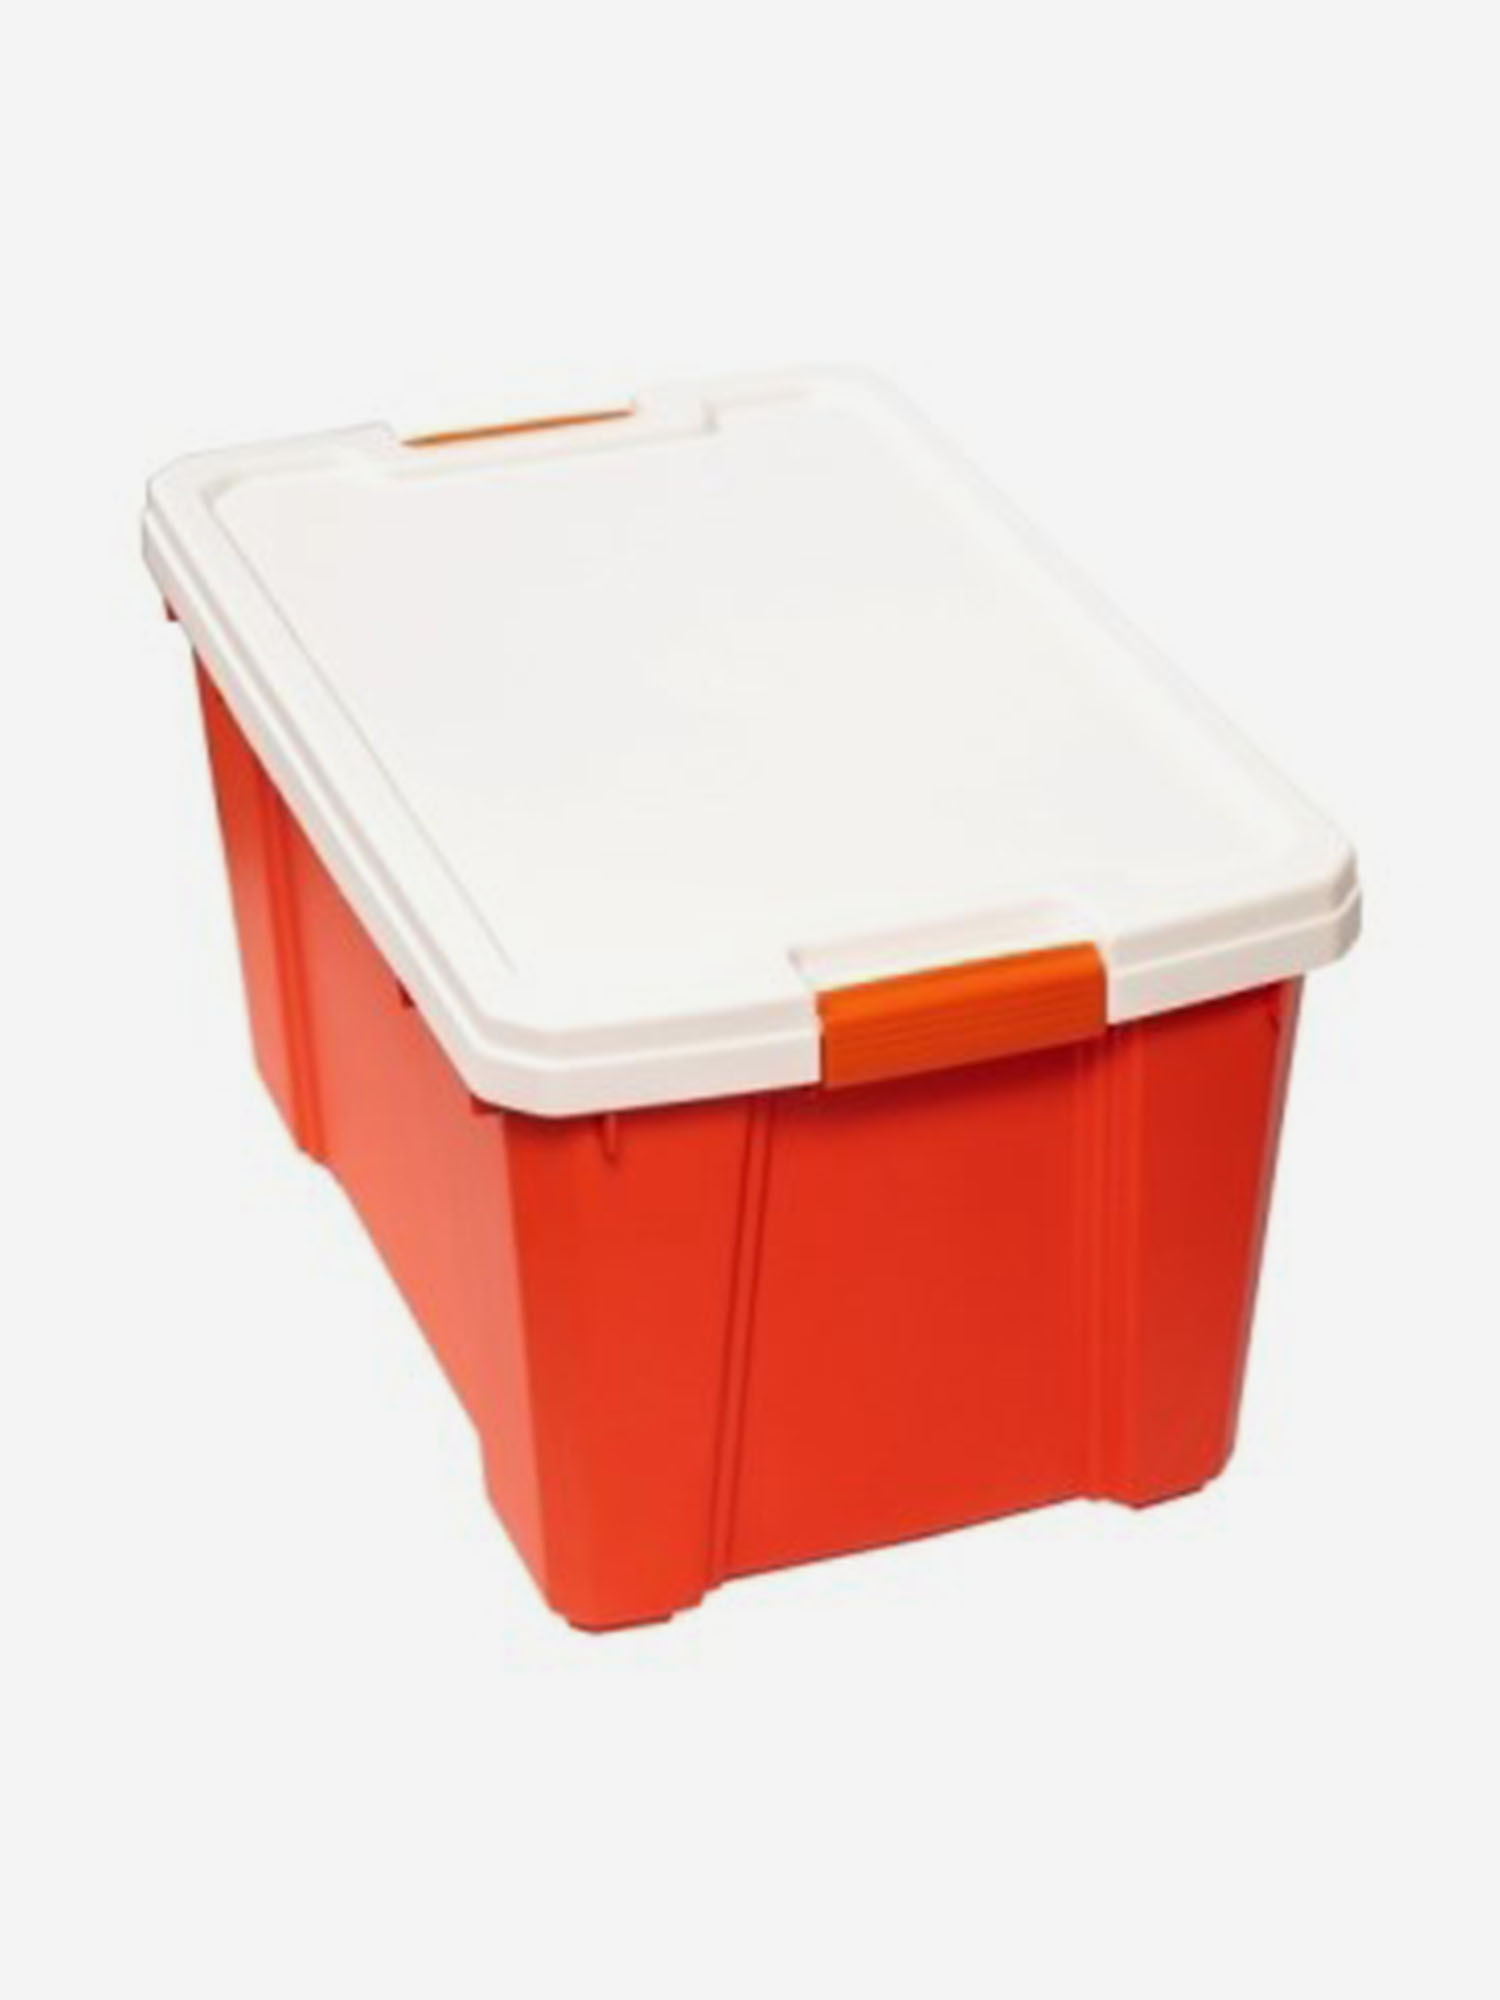 Ящик IRIS OHYAMA для x ранения, белый/оранжевый, 56 л, 59,1 x 38,8 x 33,2 см, Оранжевый термобокс iris ohyama hugel vacuum cooler box tc 40 белый 40 литров белый